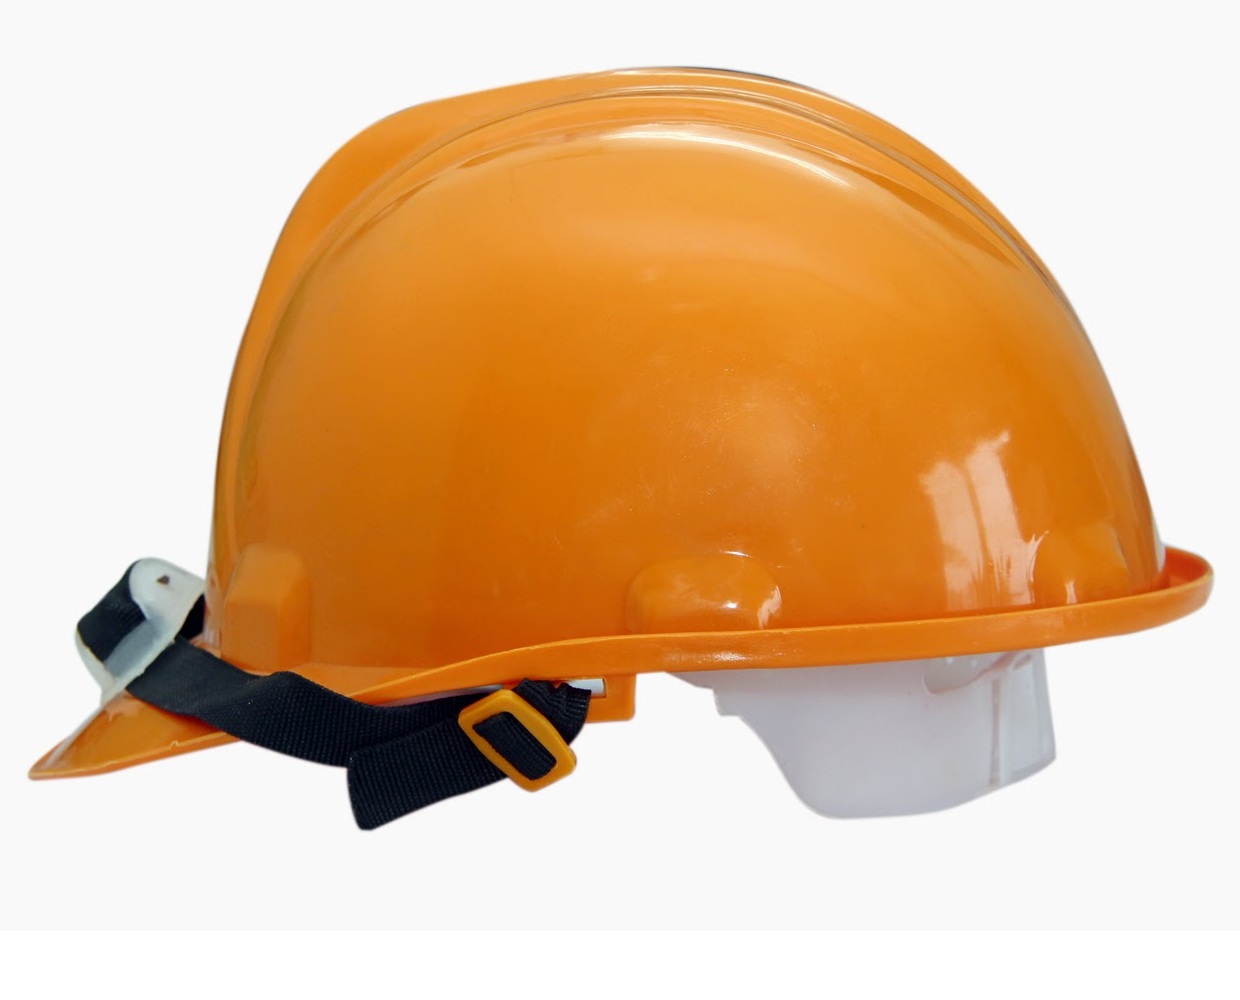 Nón bảo hộ lao động - Lựa chọn an toàn cho đầu của bạn